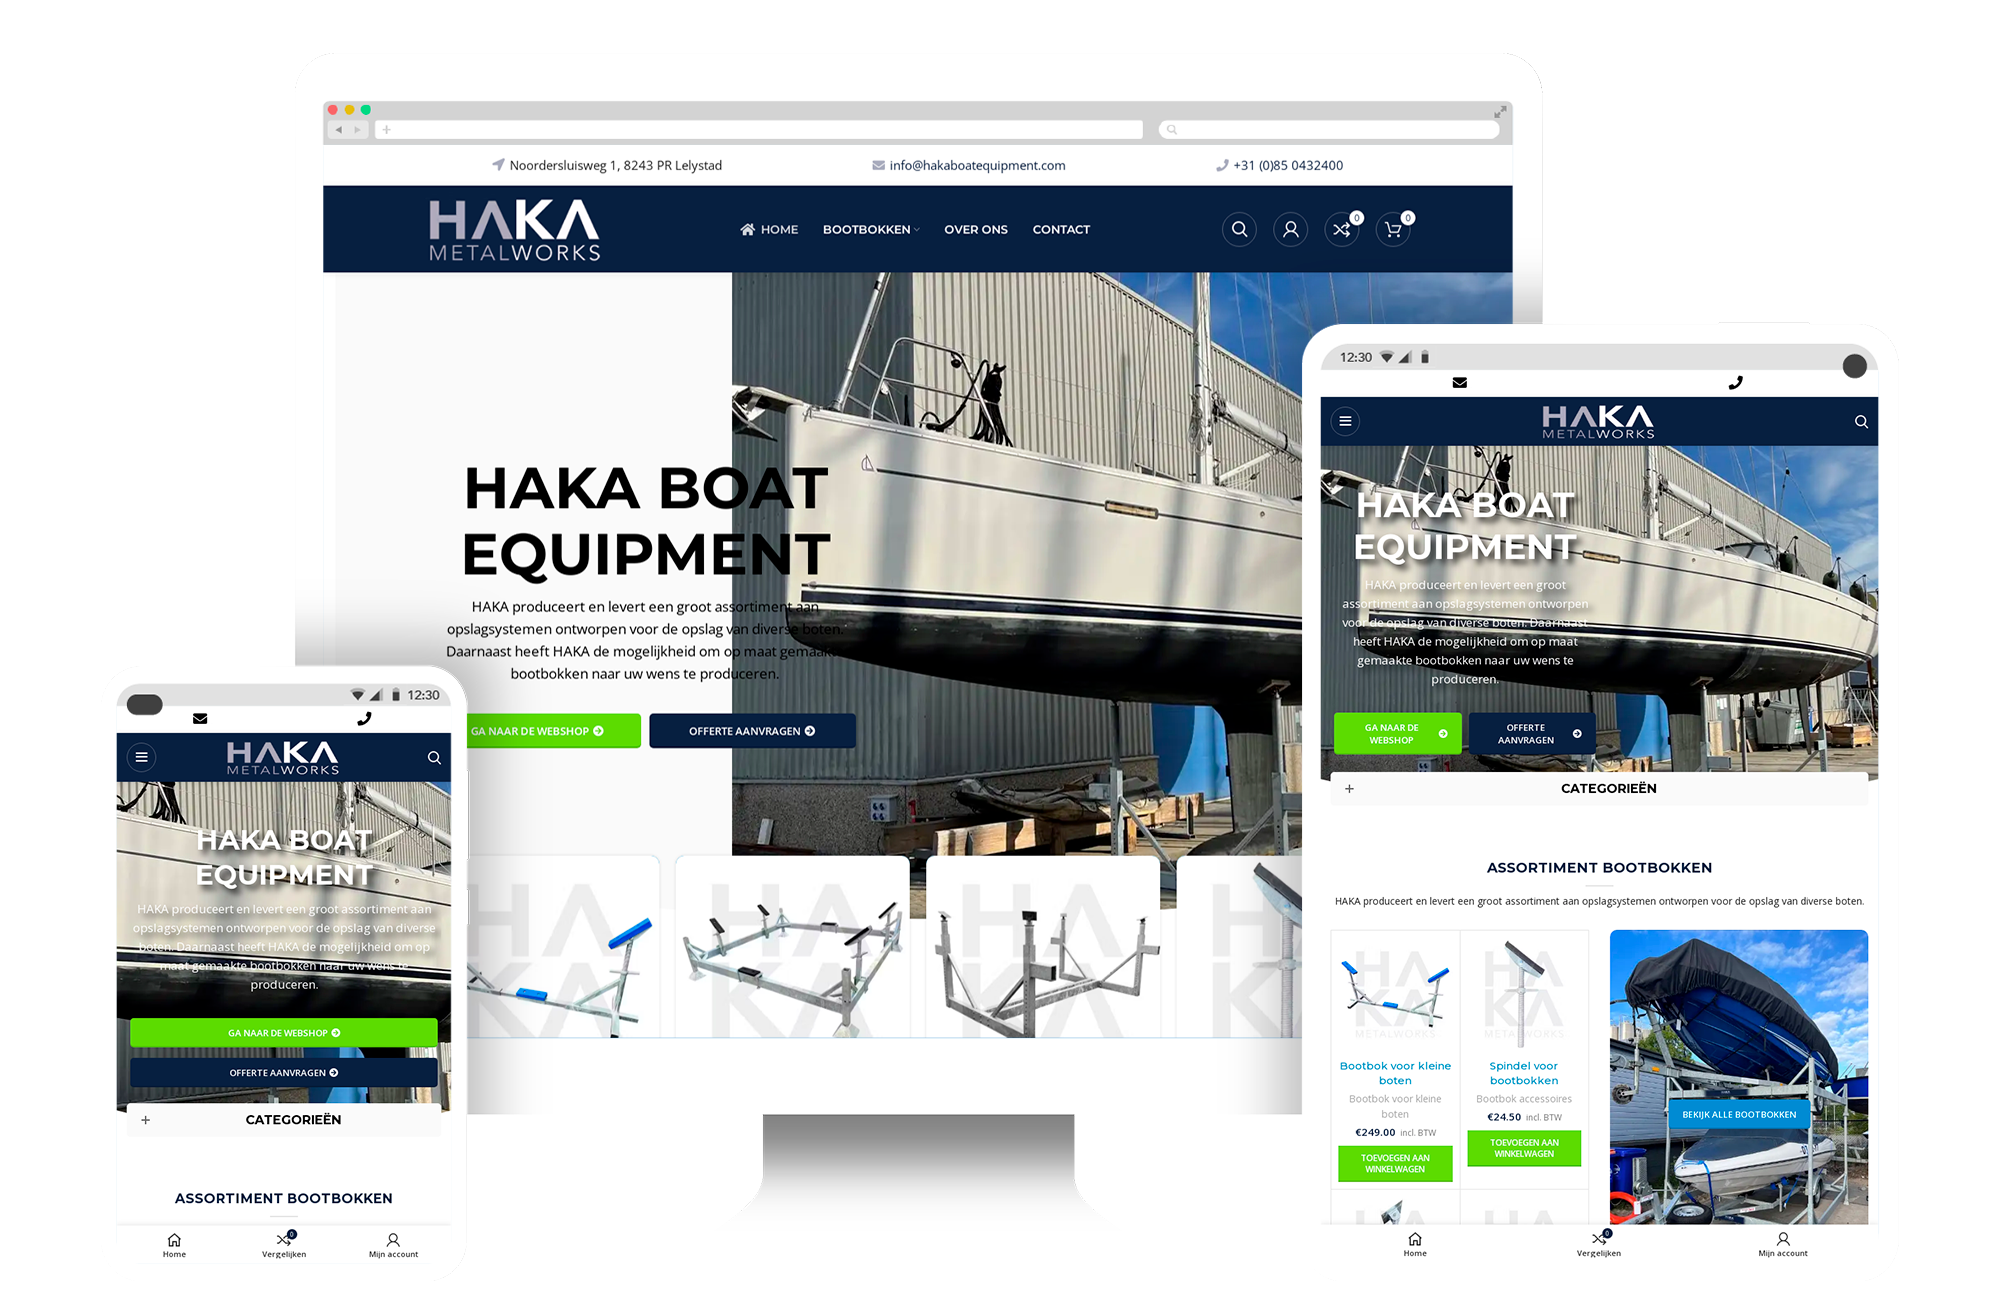 haka-boat-equipment